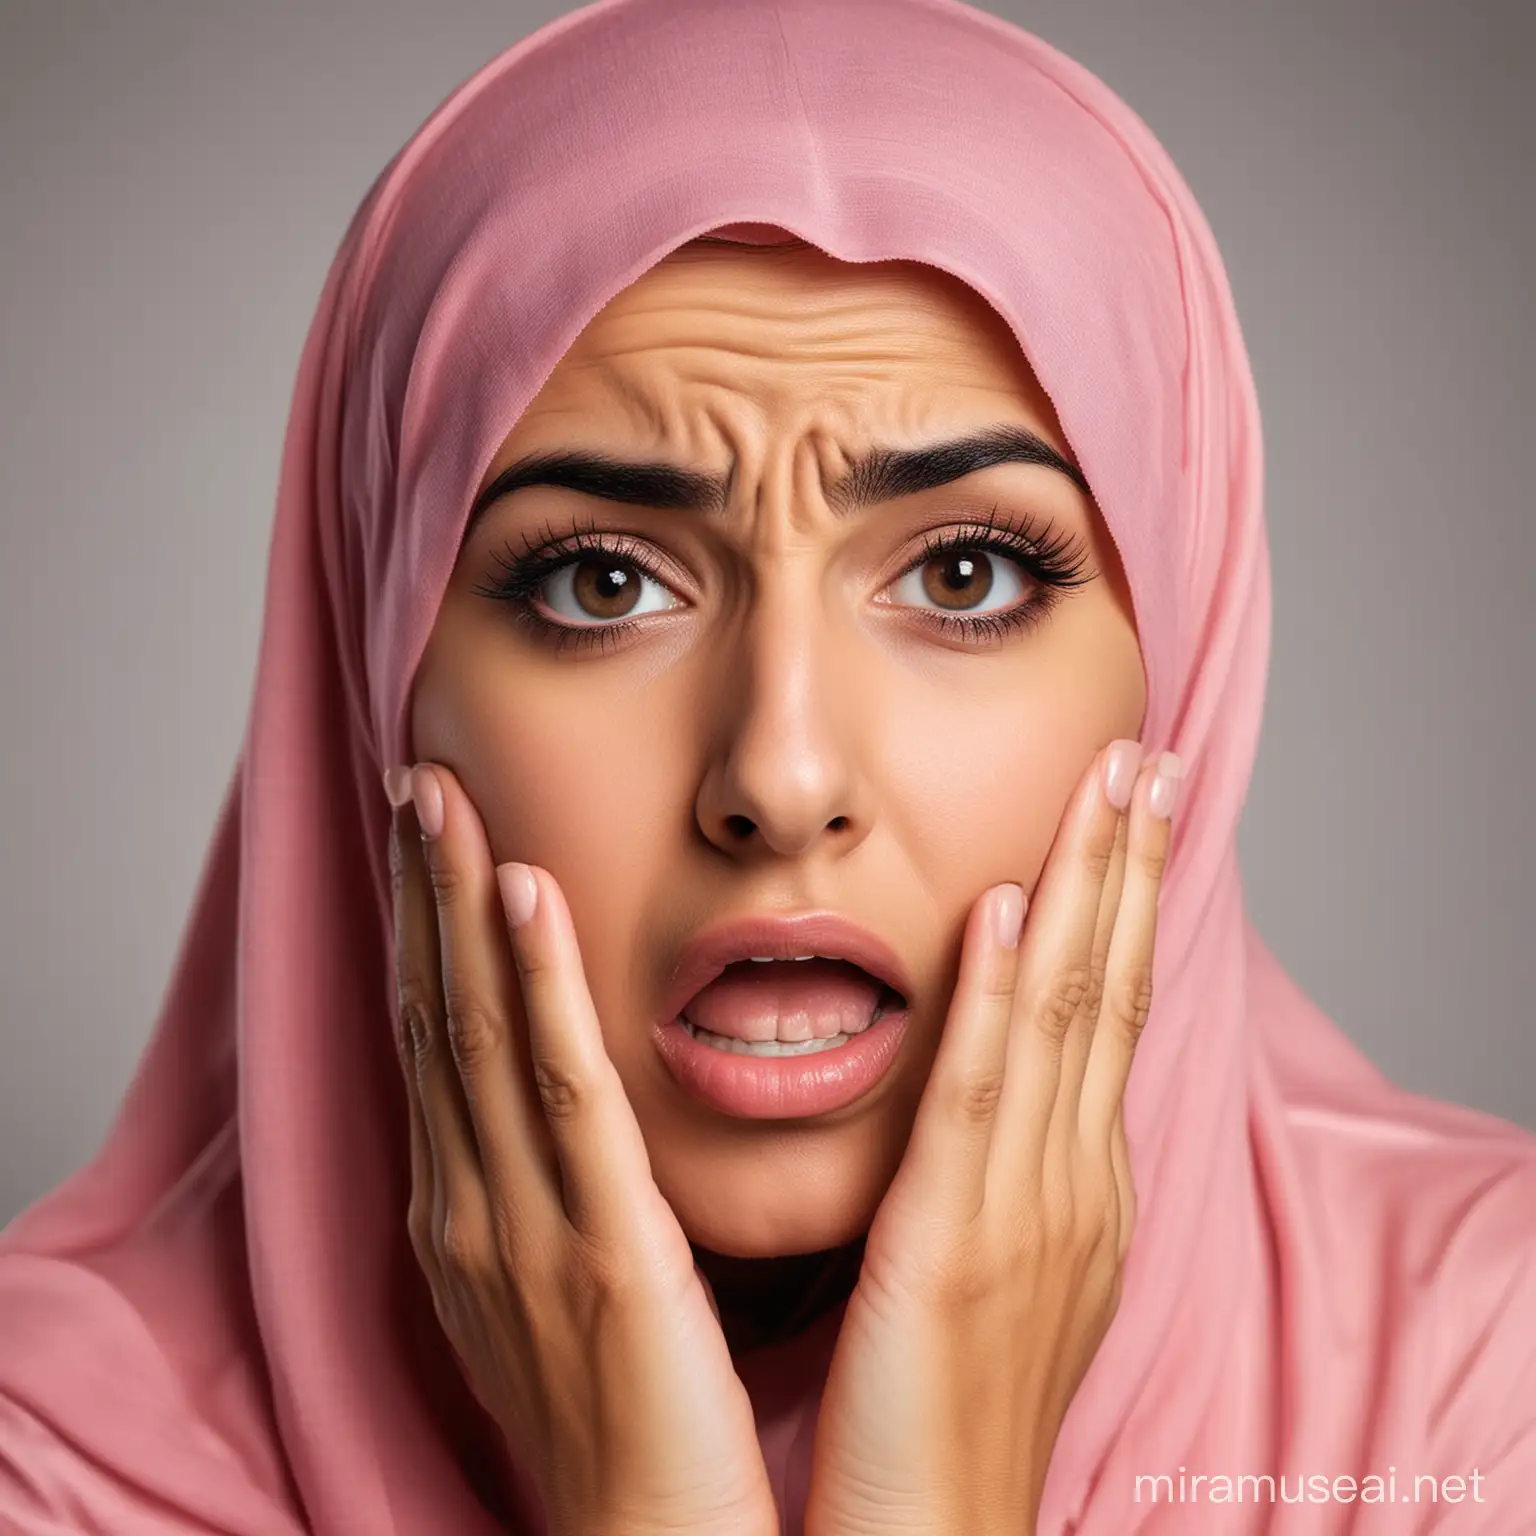 femme arabe choquée, qui se tient les joues